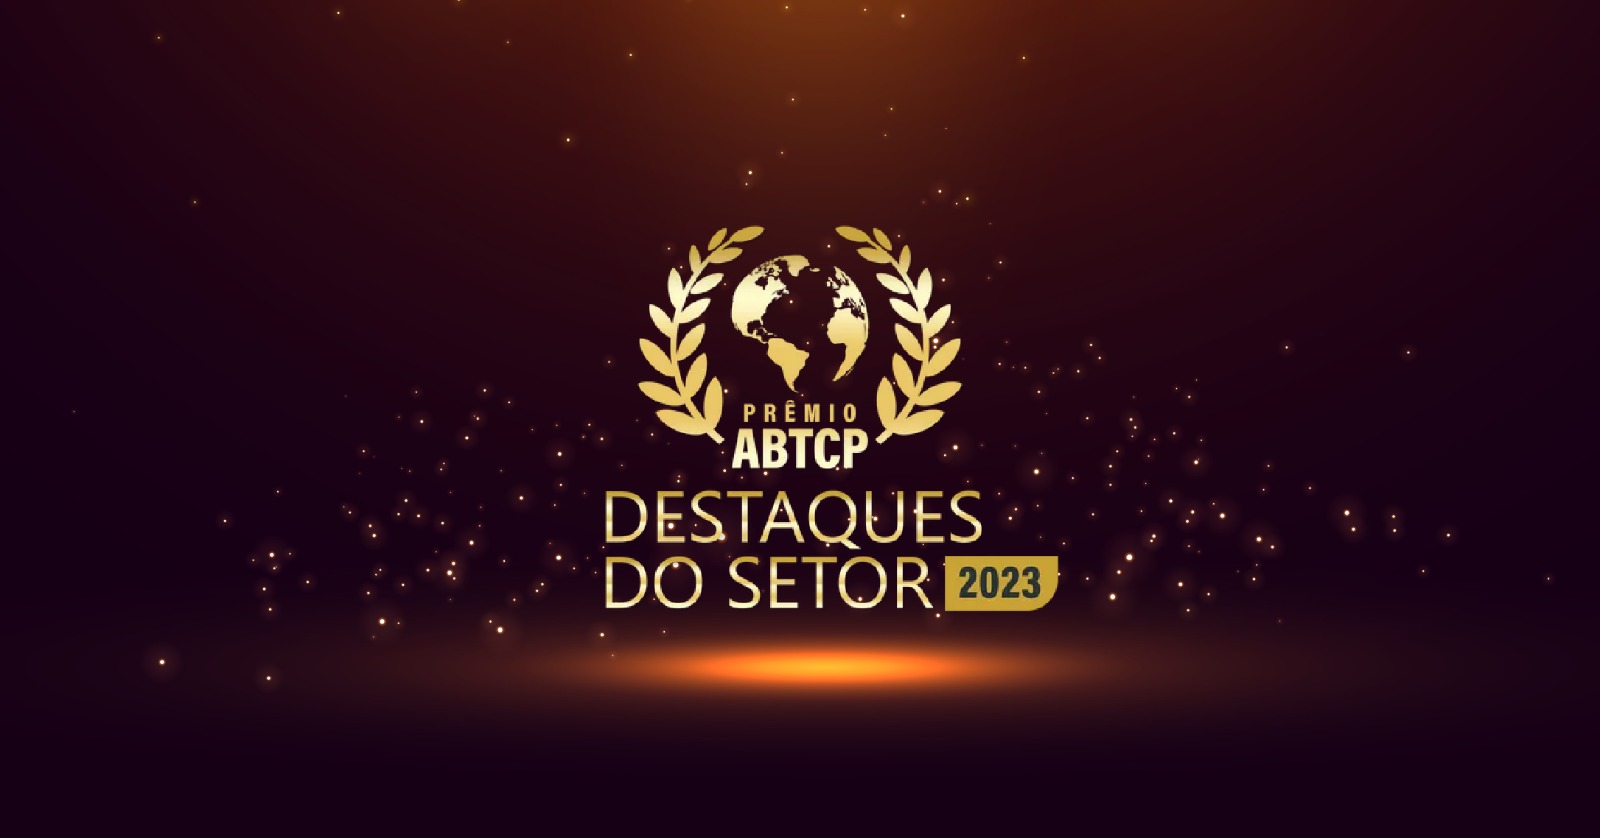 Pöyry conquista o Prêmio Destaque do Setor 2023 - ABTCP